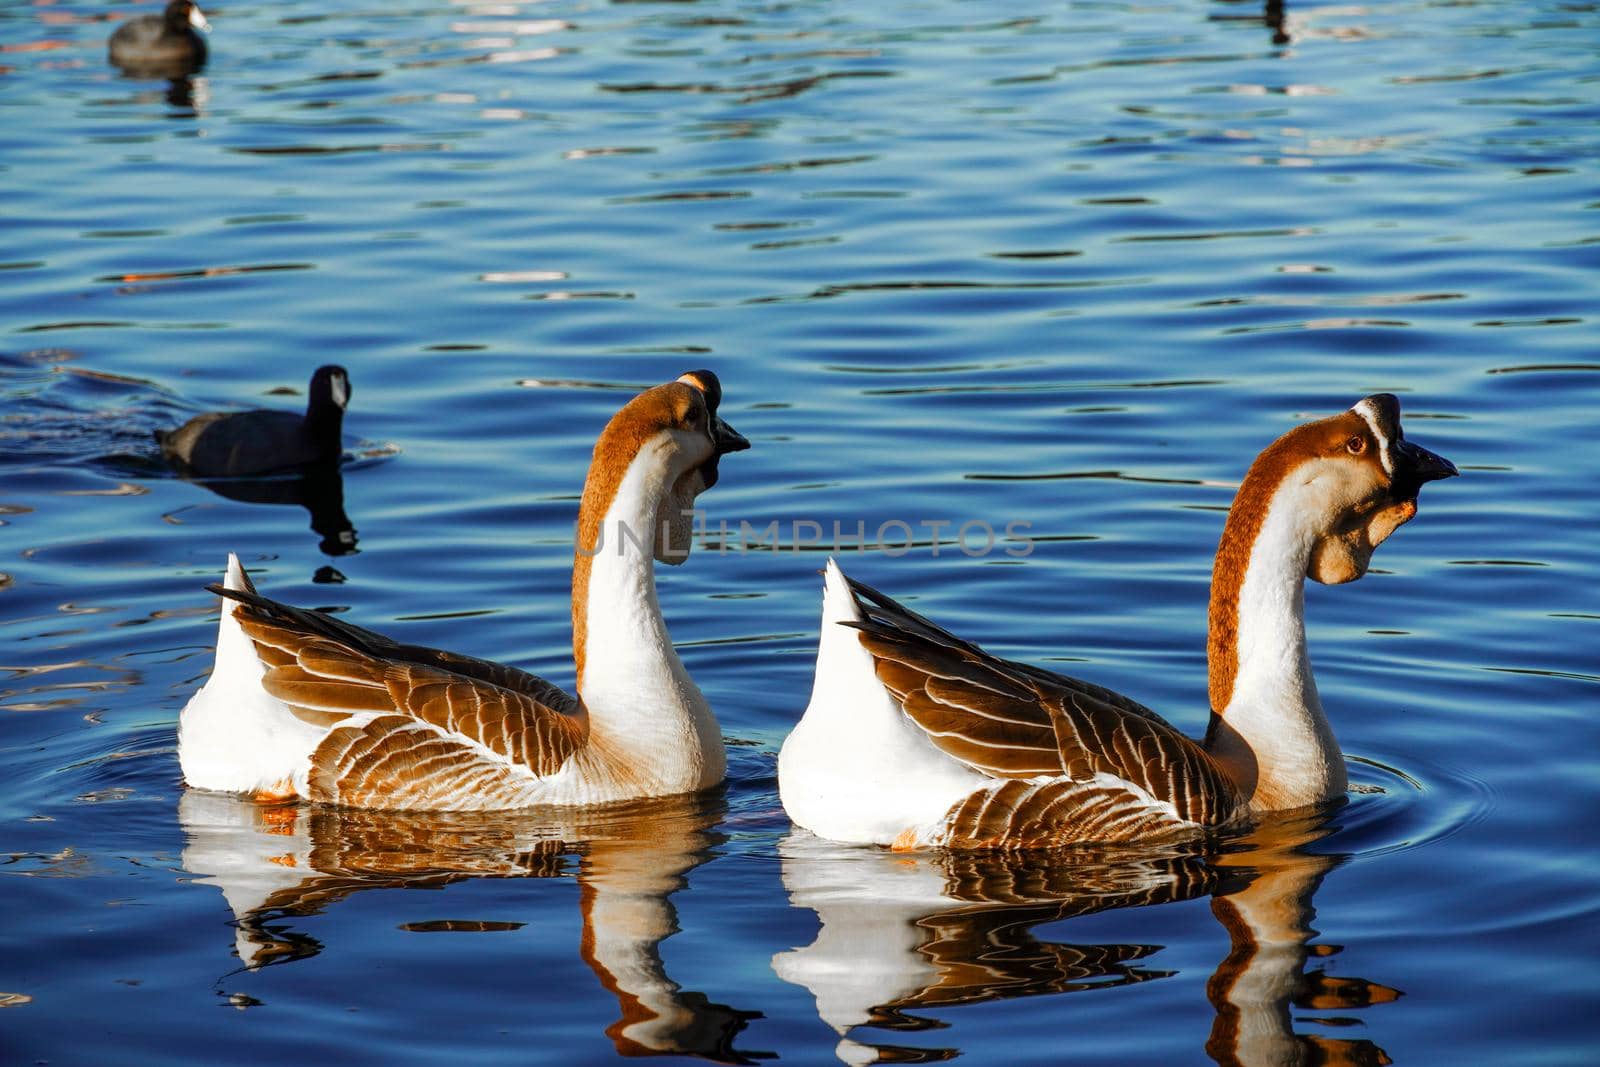 Goose on a lake by Bonandbon